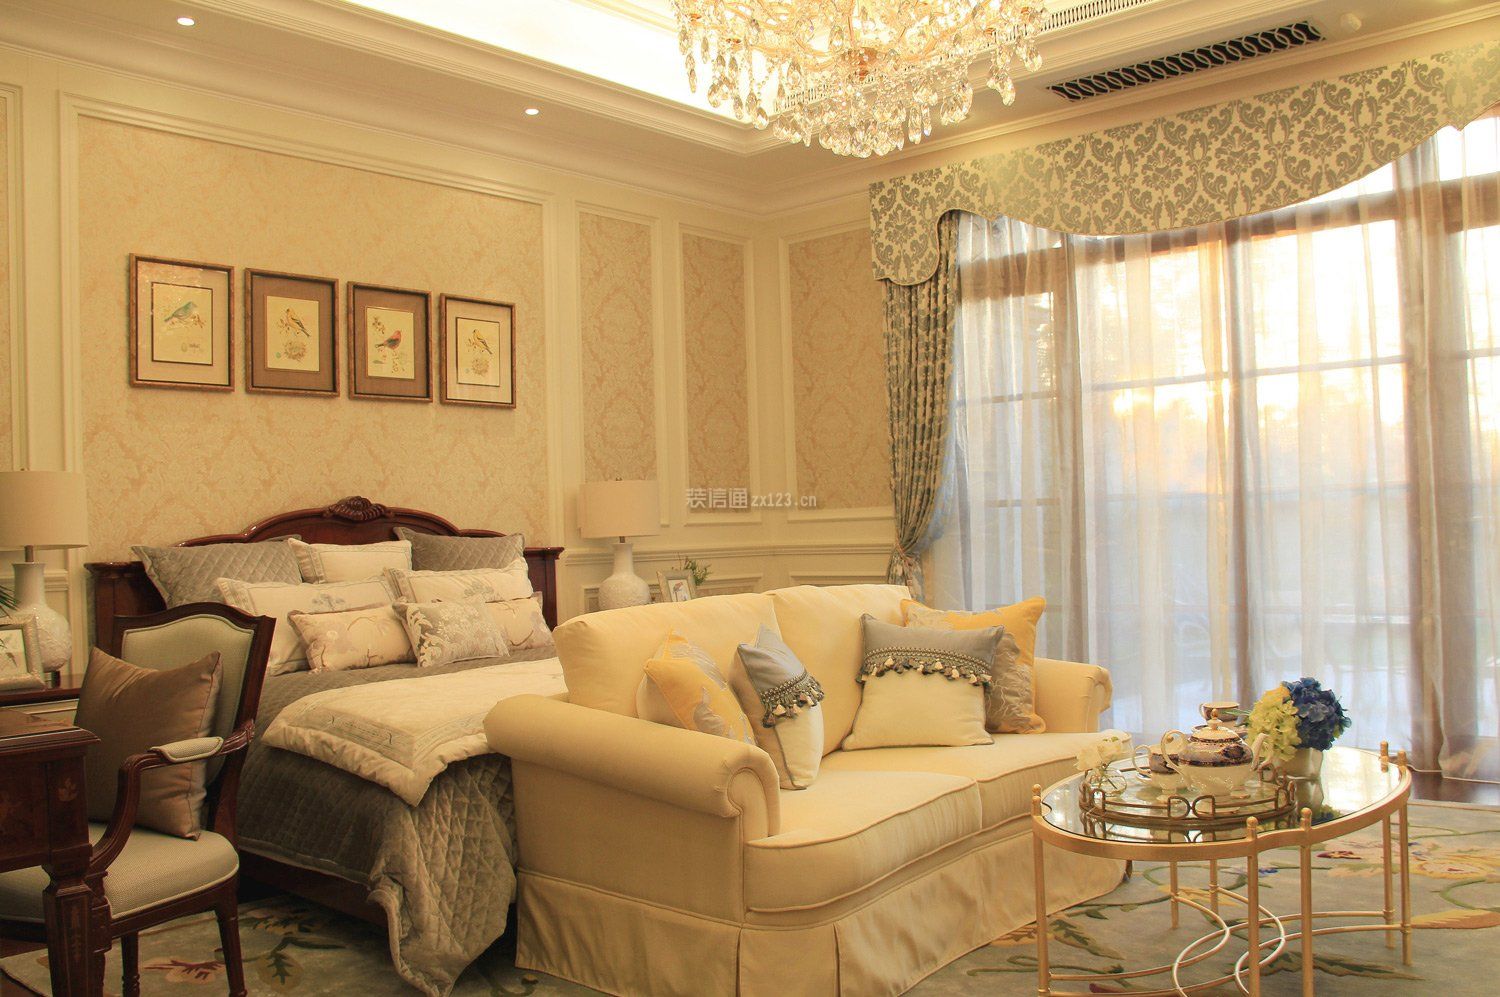 法式轻奢浪漫风格卧室沙发摆放装修效果图